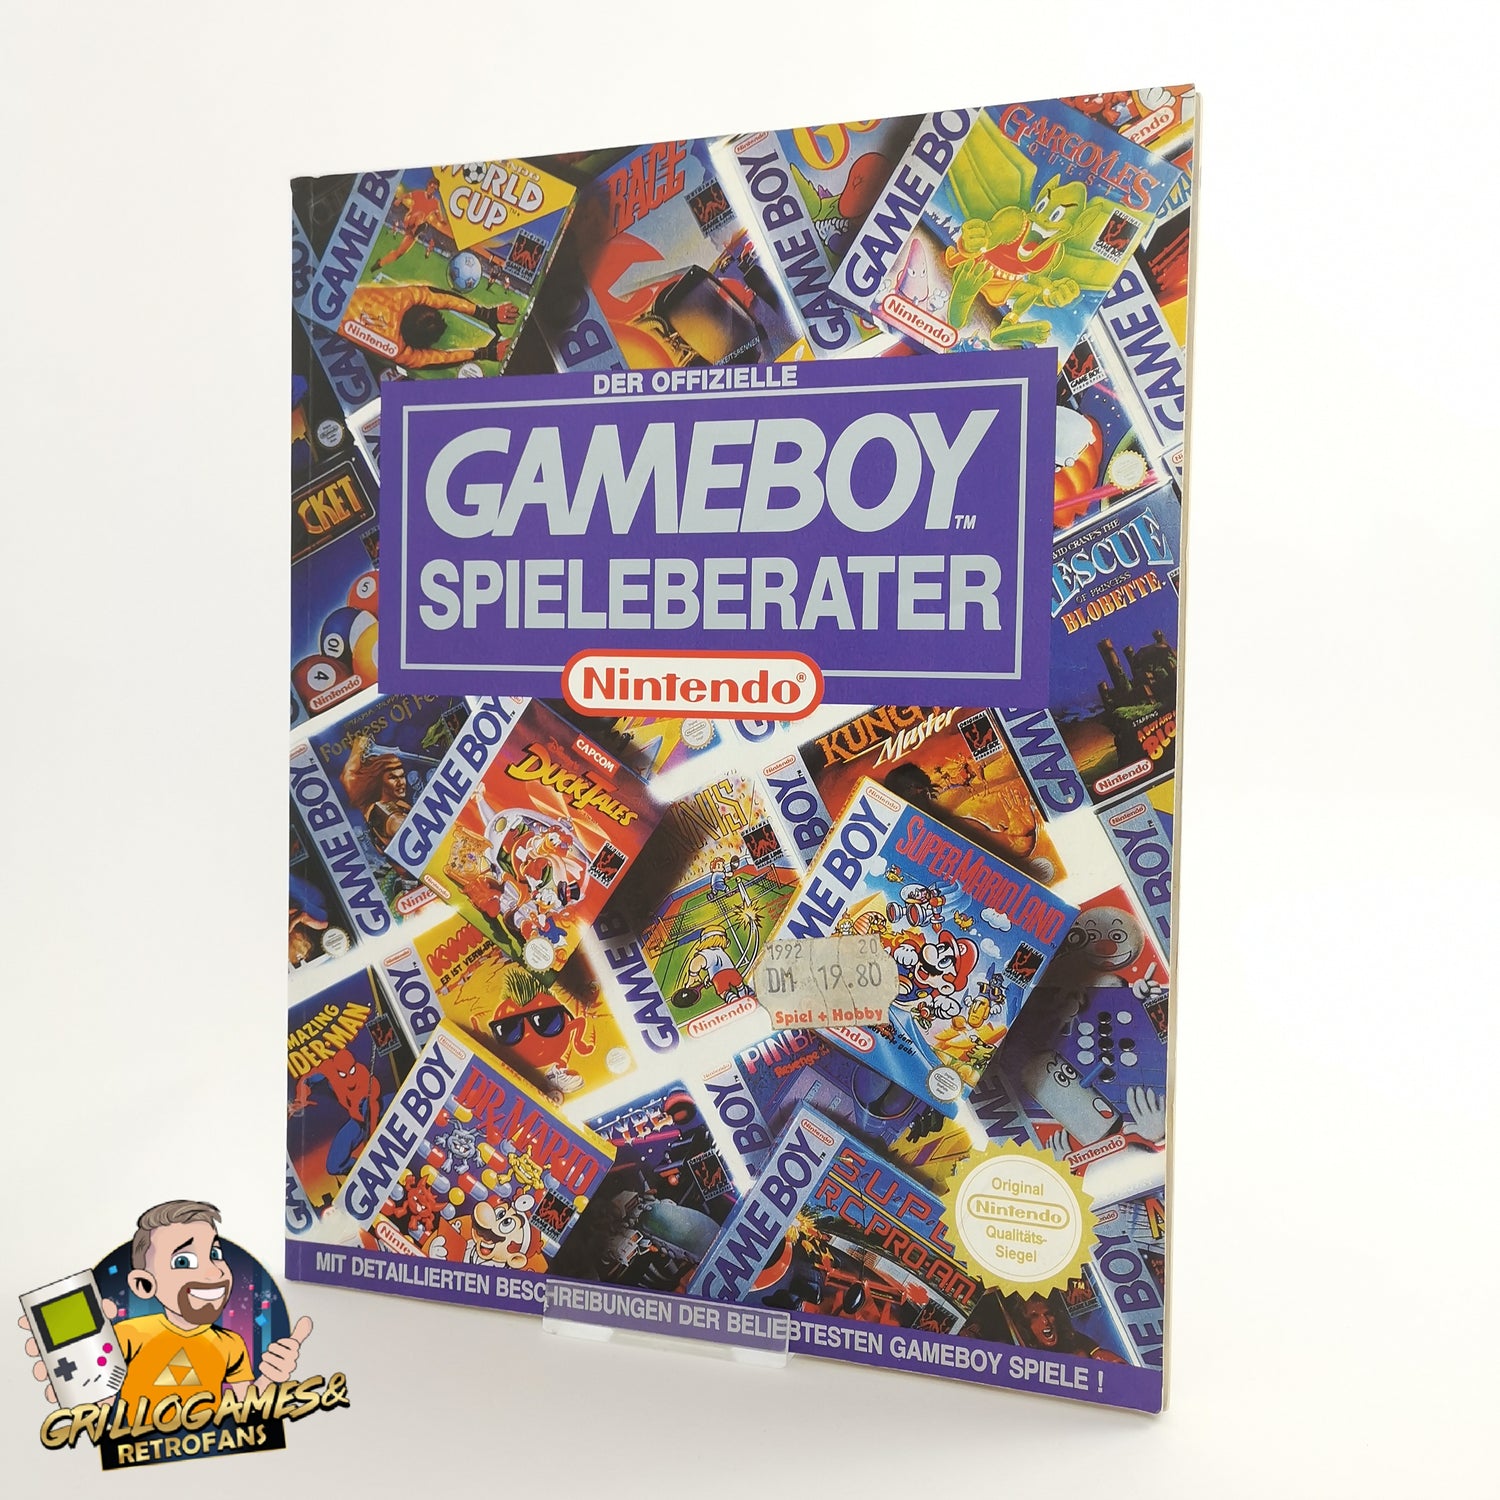 Der offizielle Nintendo Gameboy Spieleberater | Lösungsbuch Guide Game Boy